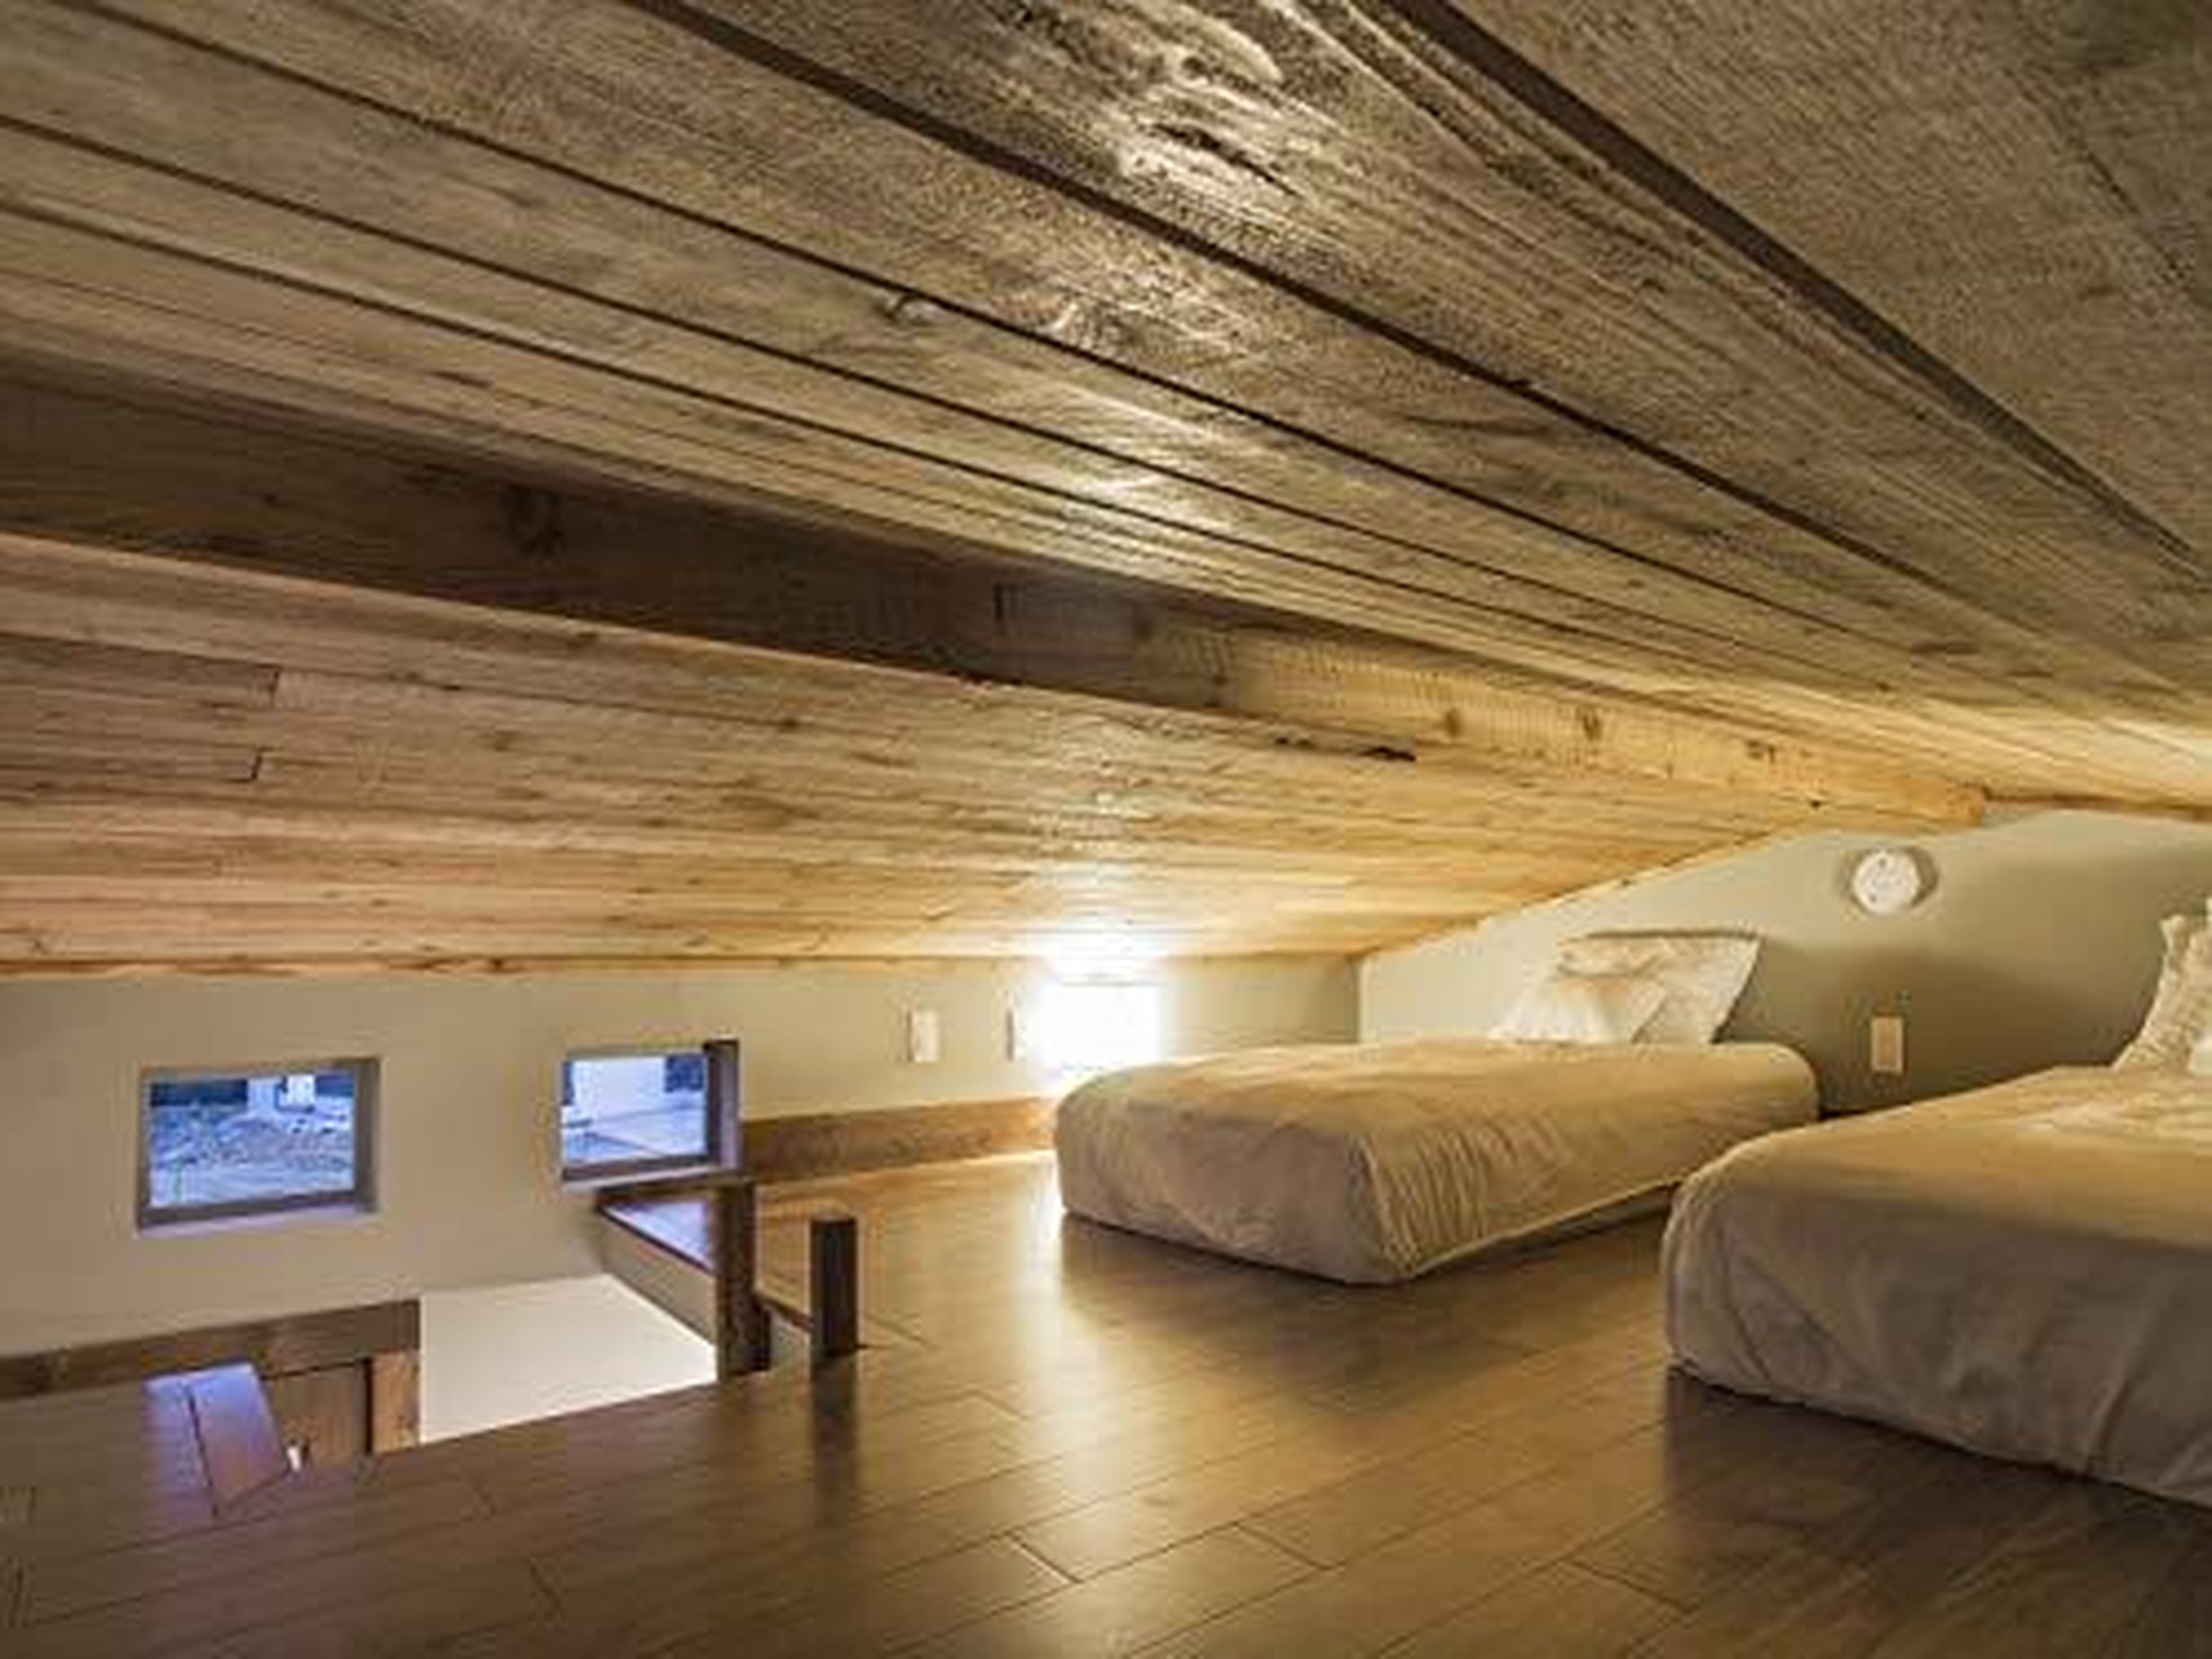 El techo inclinado hace que golpearse la cabeza tenga una probabilidad muy alta, y estar de pie en un dormitorio elevado como éste es totalmente imposible.